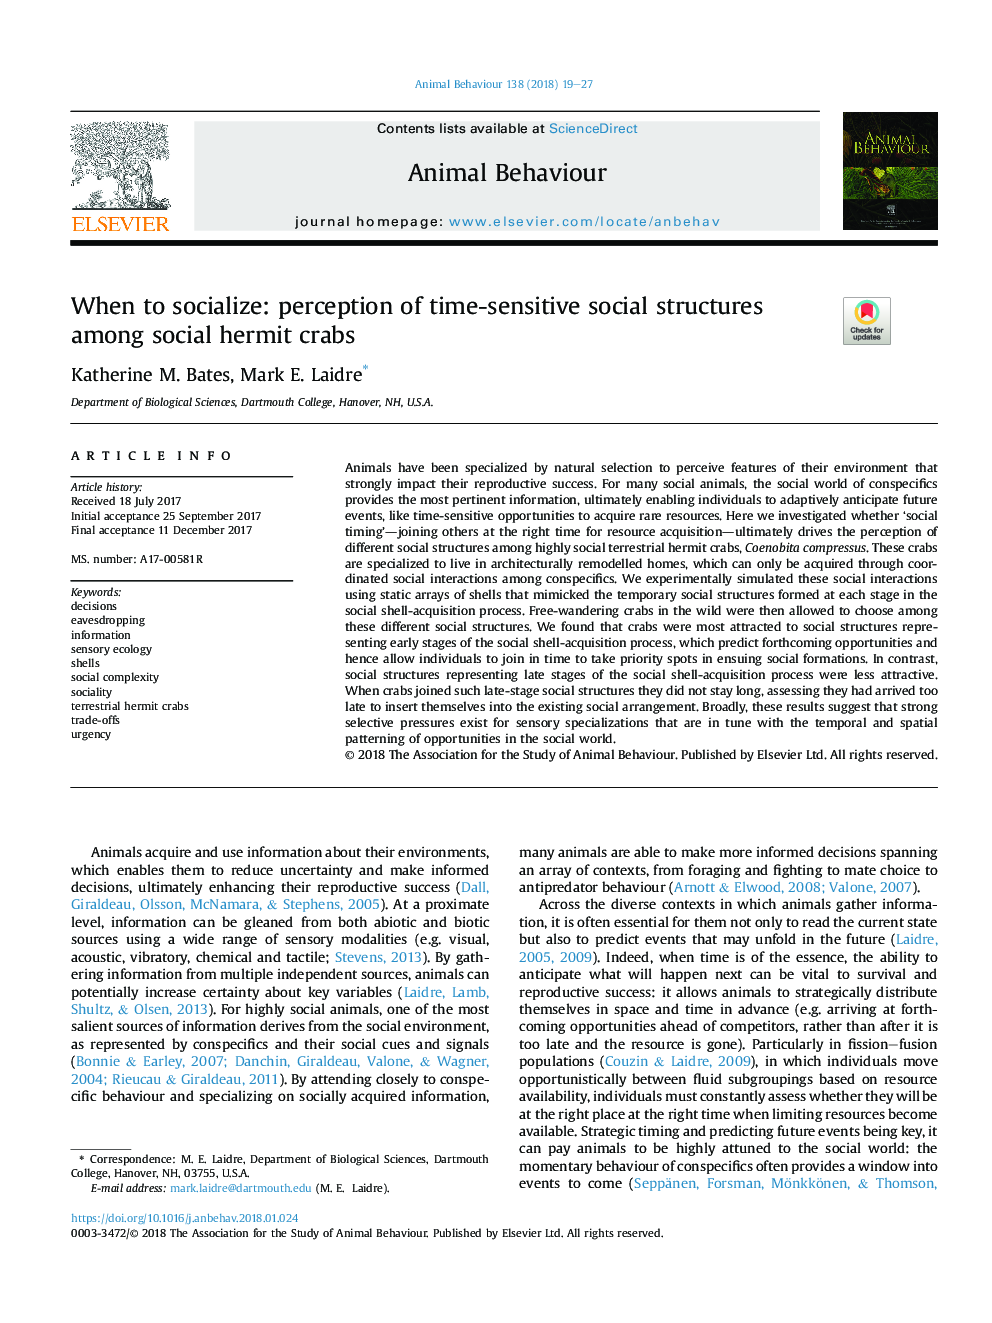 هنگامی که به اجتماع می پردازیم: درک ساختارهای اجتماعی حساس به زمان در میان خرچنگ های انحرافی اجتماعی 